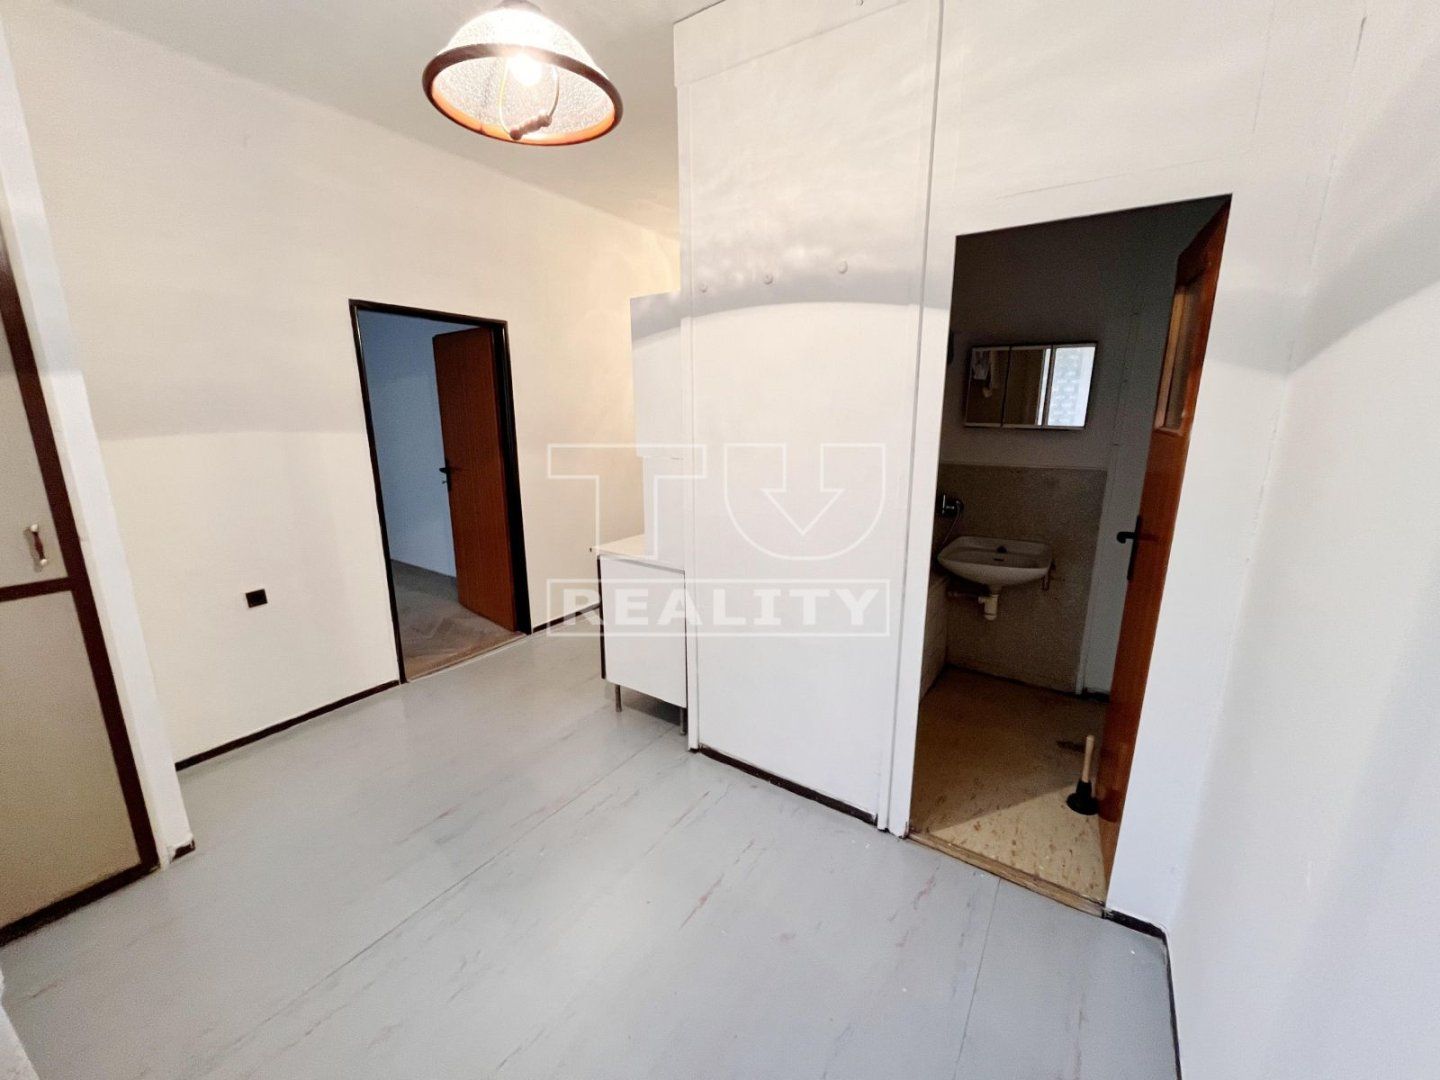 TUreality ponúka na predaj 3i byt vo Zvolene Zlatý Potok o výmere 68 m² v pôvodnom stave